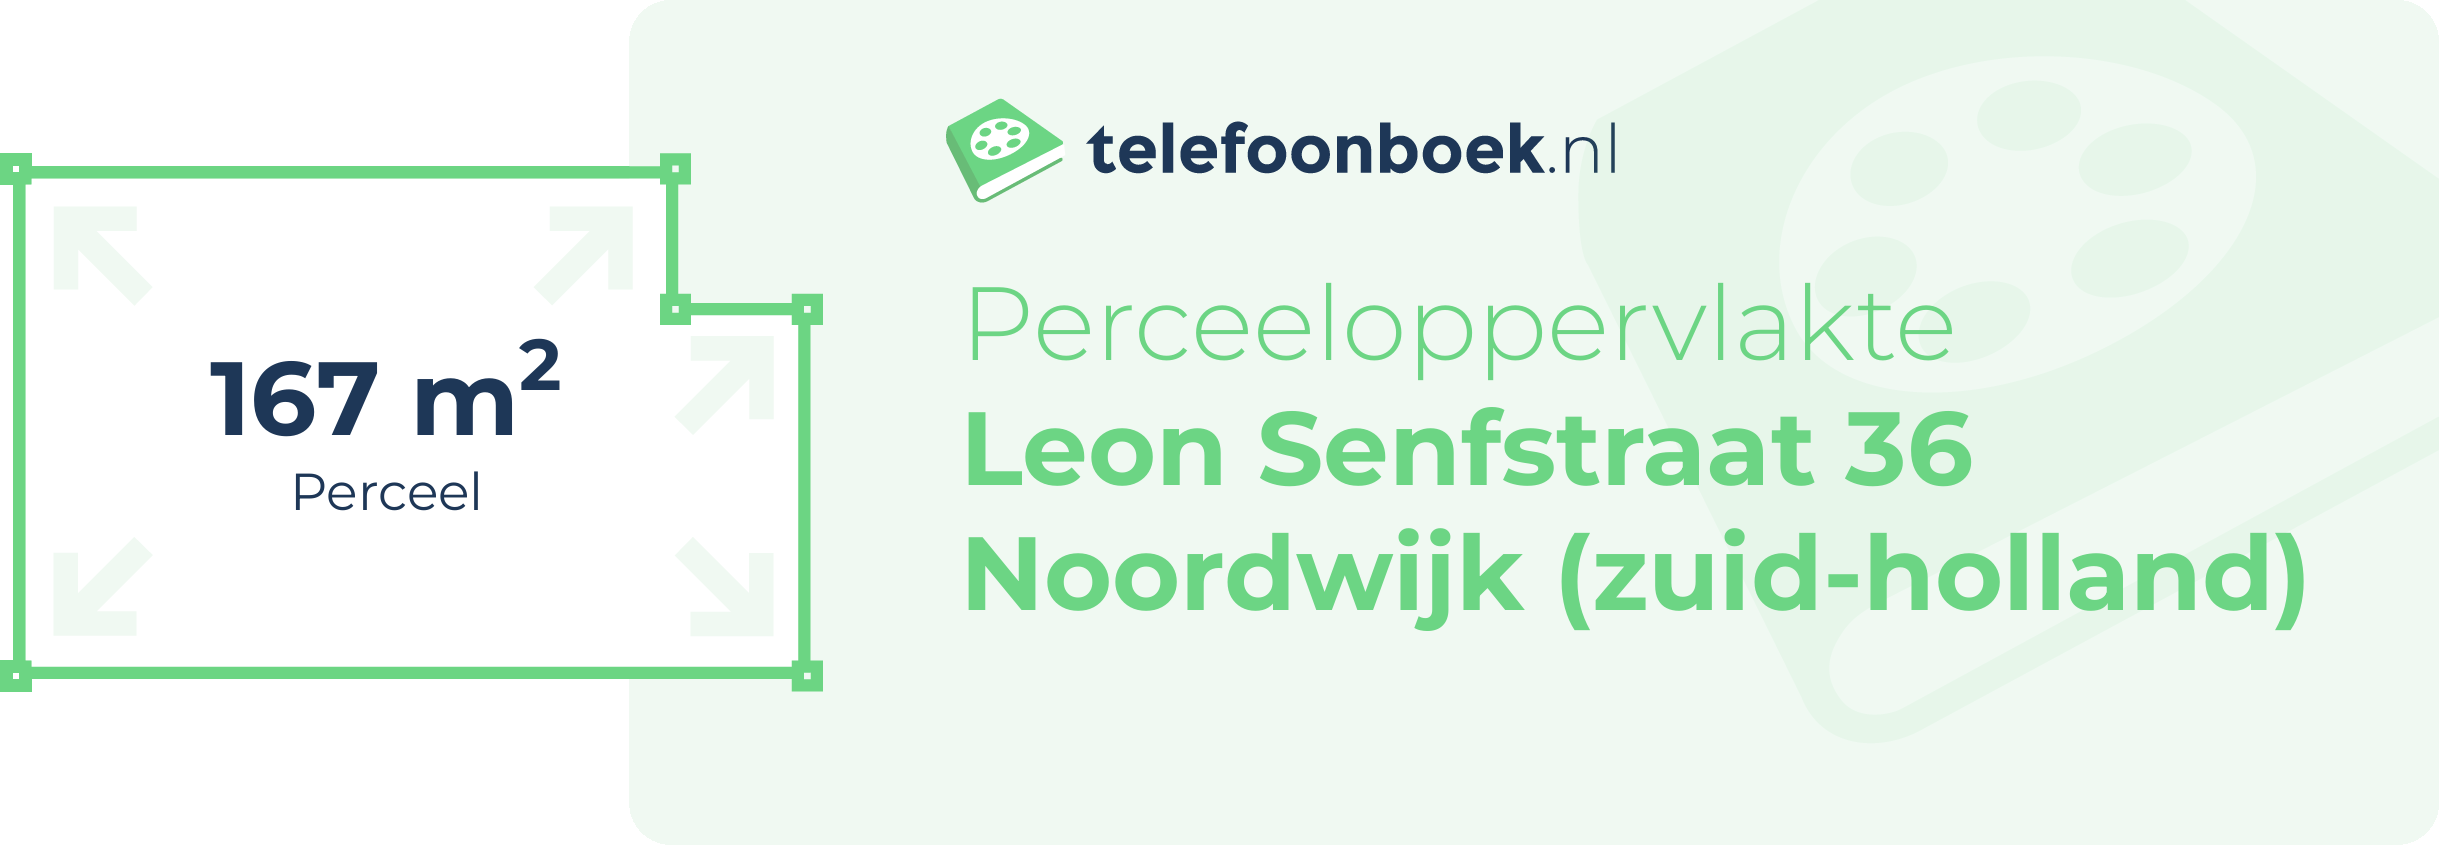 Perceeloppervlakte Leon Senfstraat 36 Noordwijk (Zuid-Holland)